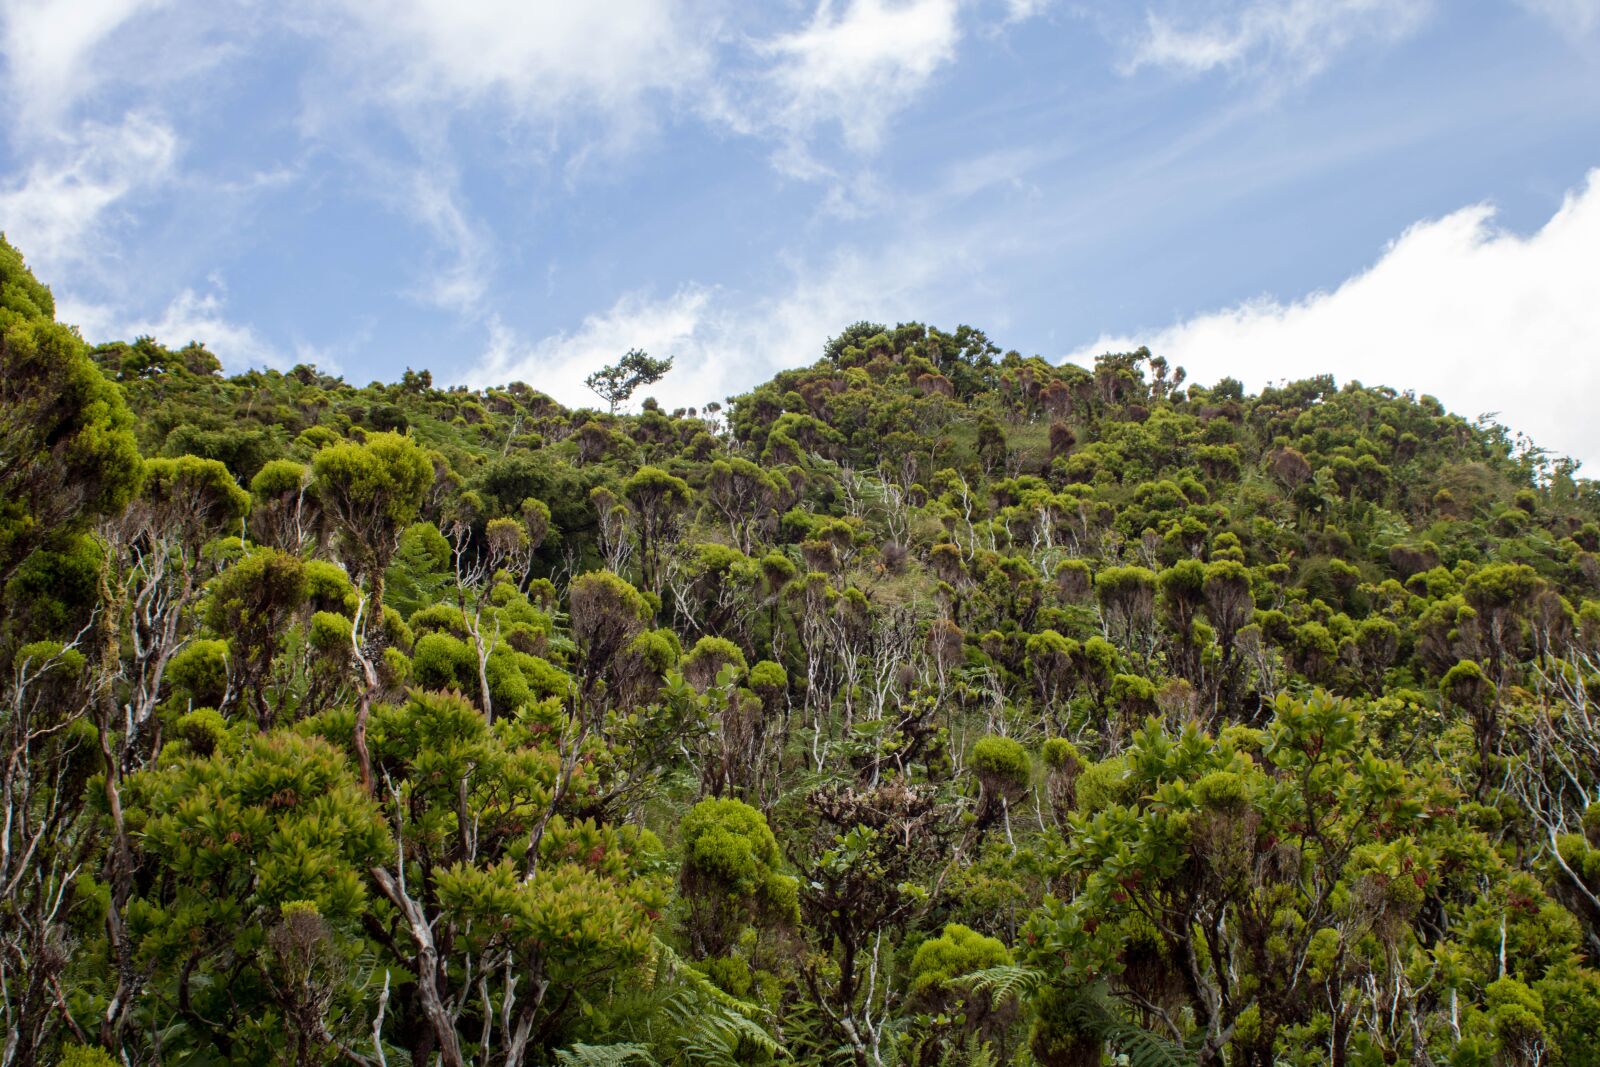 Canon EF 28-80mm f/3.5-5.6 USM sample photo. Nature, landscape, endemic vegetation photography